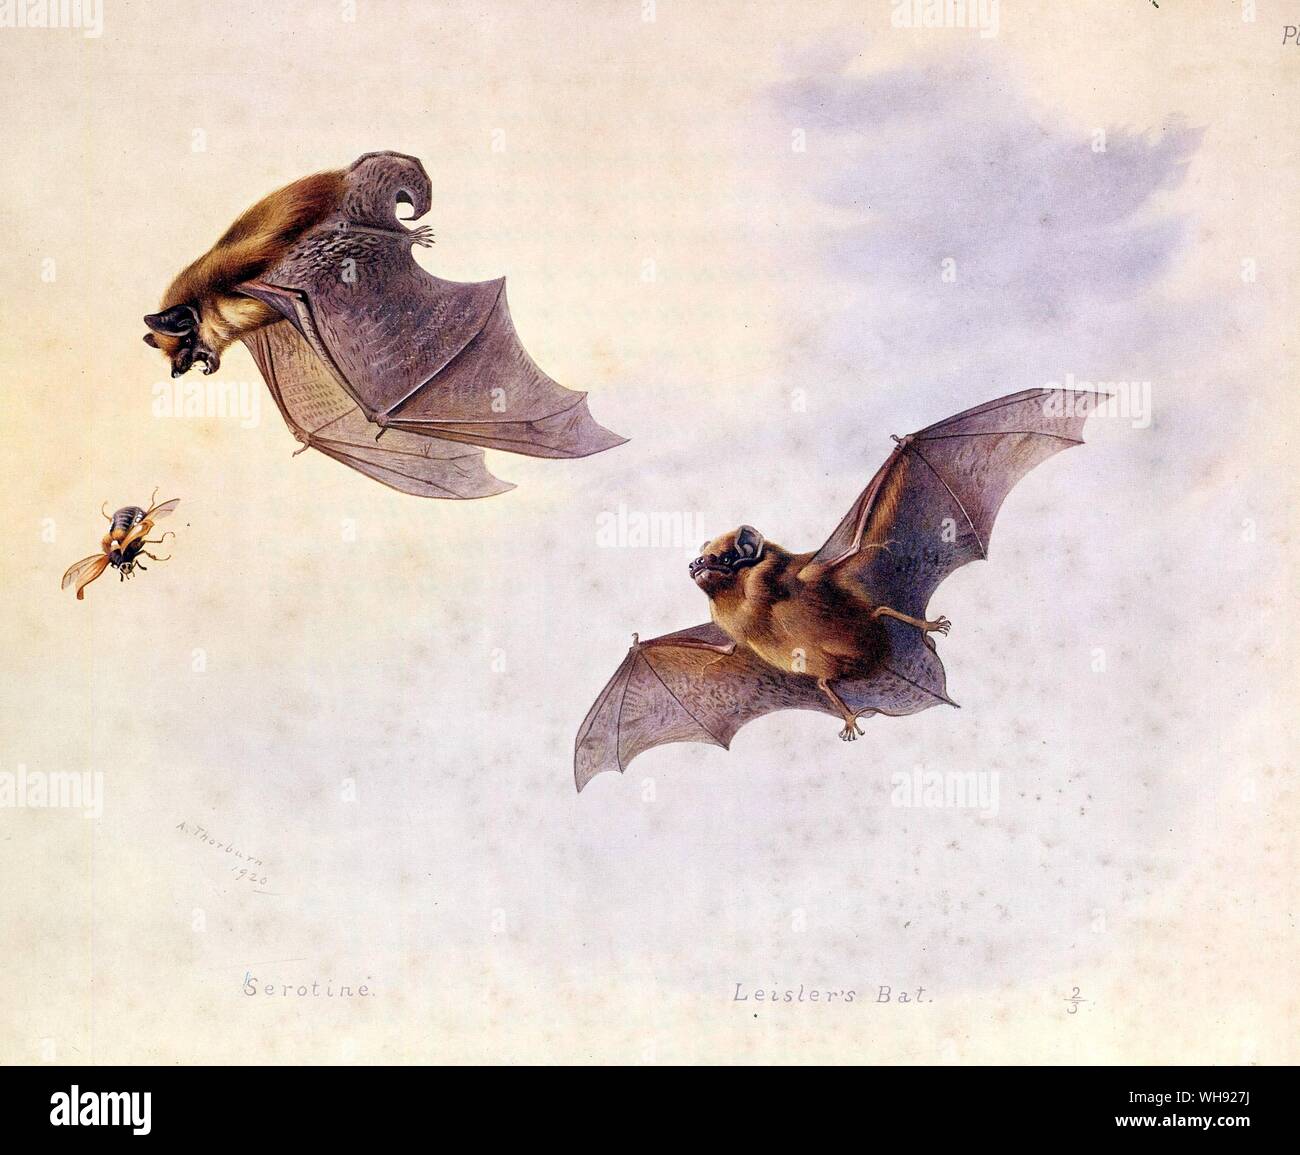 The Serotine, The Parti Coloured Bat, Leisler's Bat Stock Photo